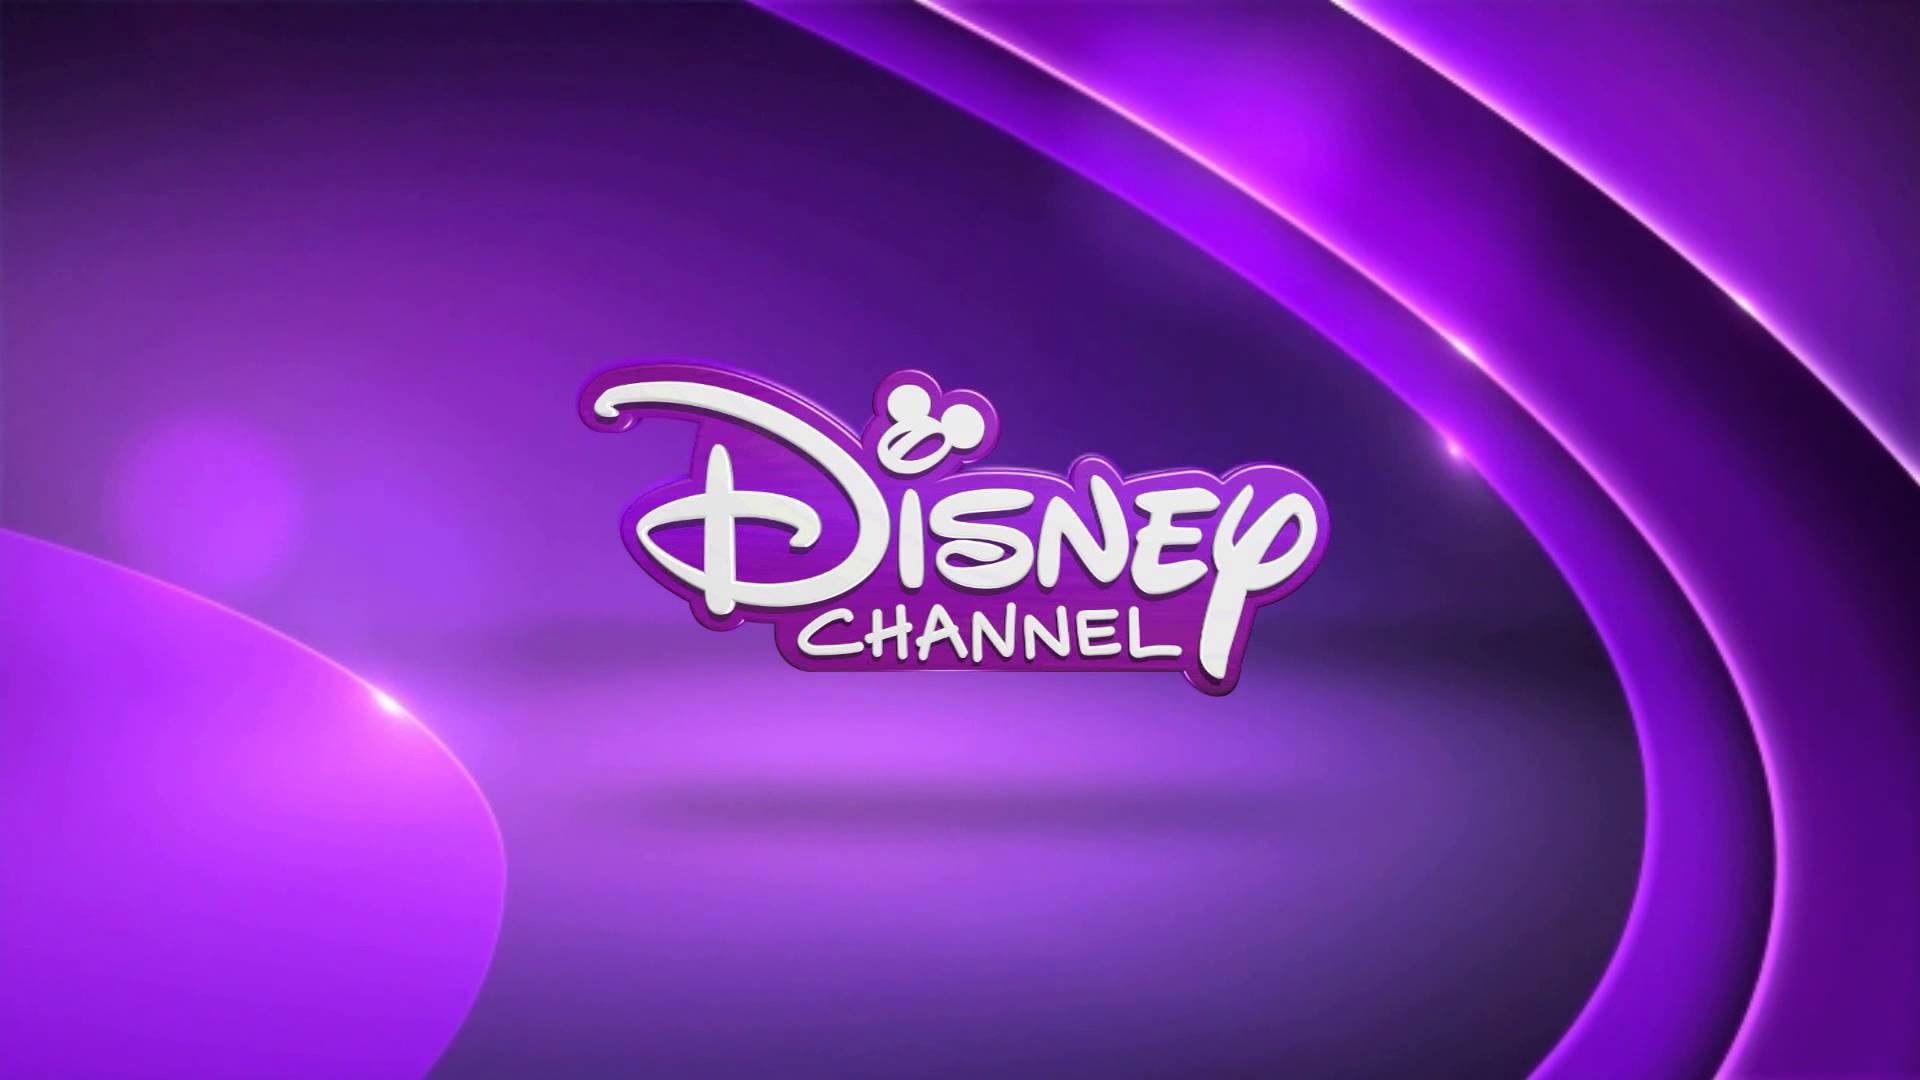 Data Src Cool Disney Channel Wallpaper - Disney Channel - HD Wallpaper 